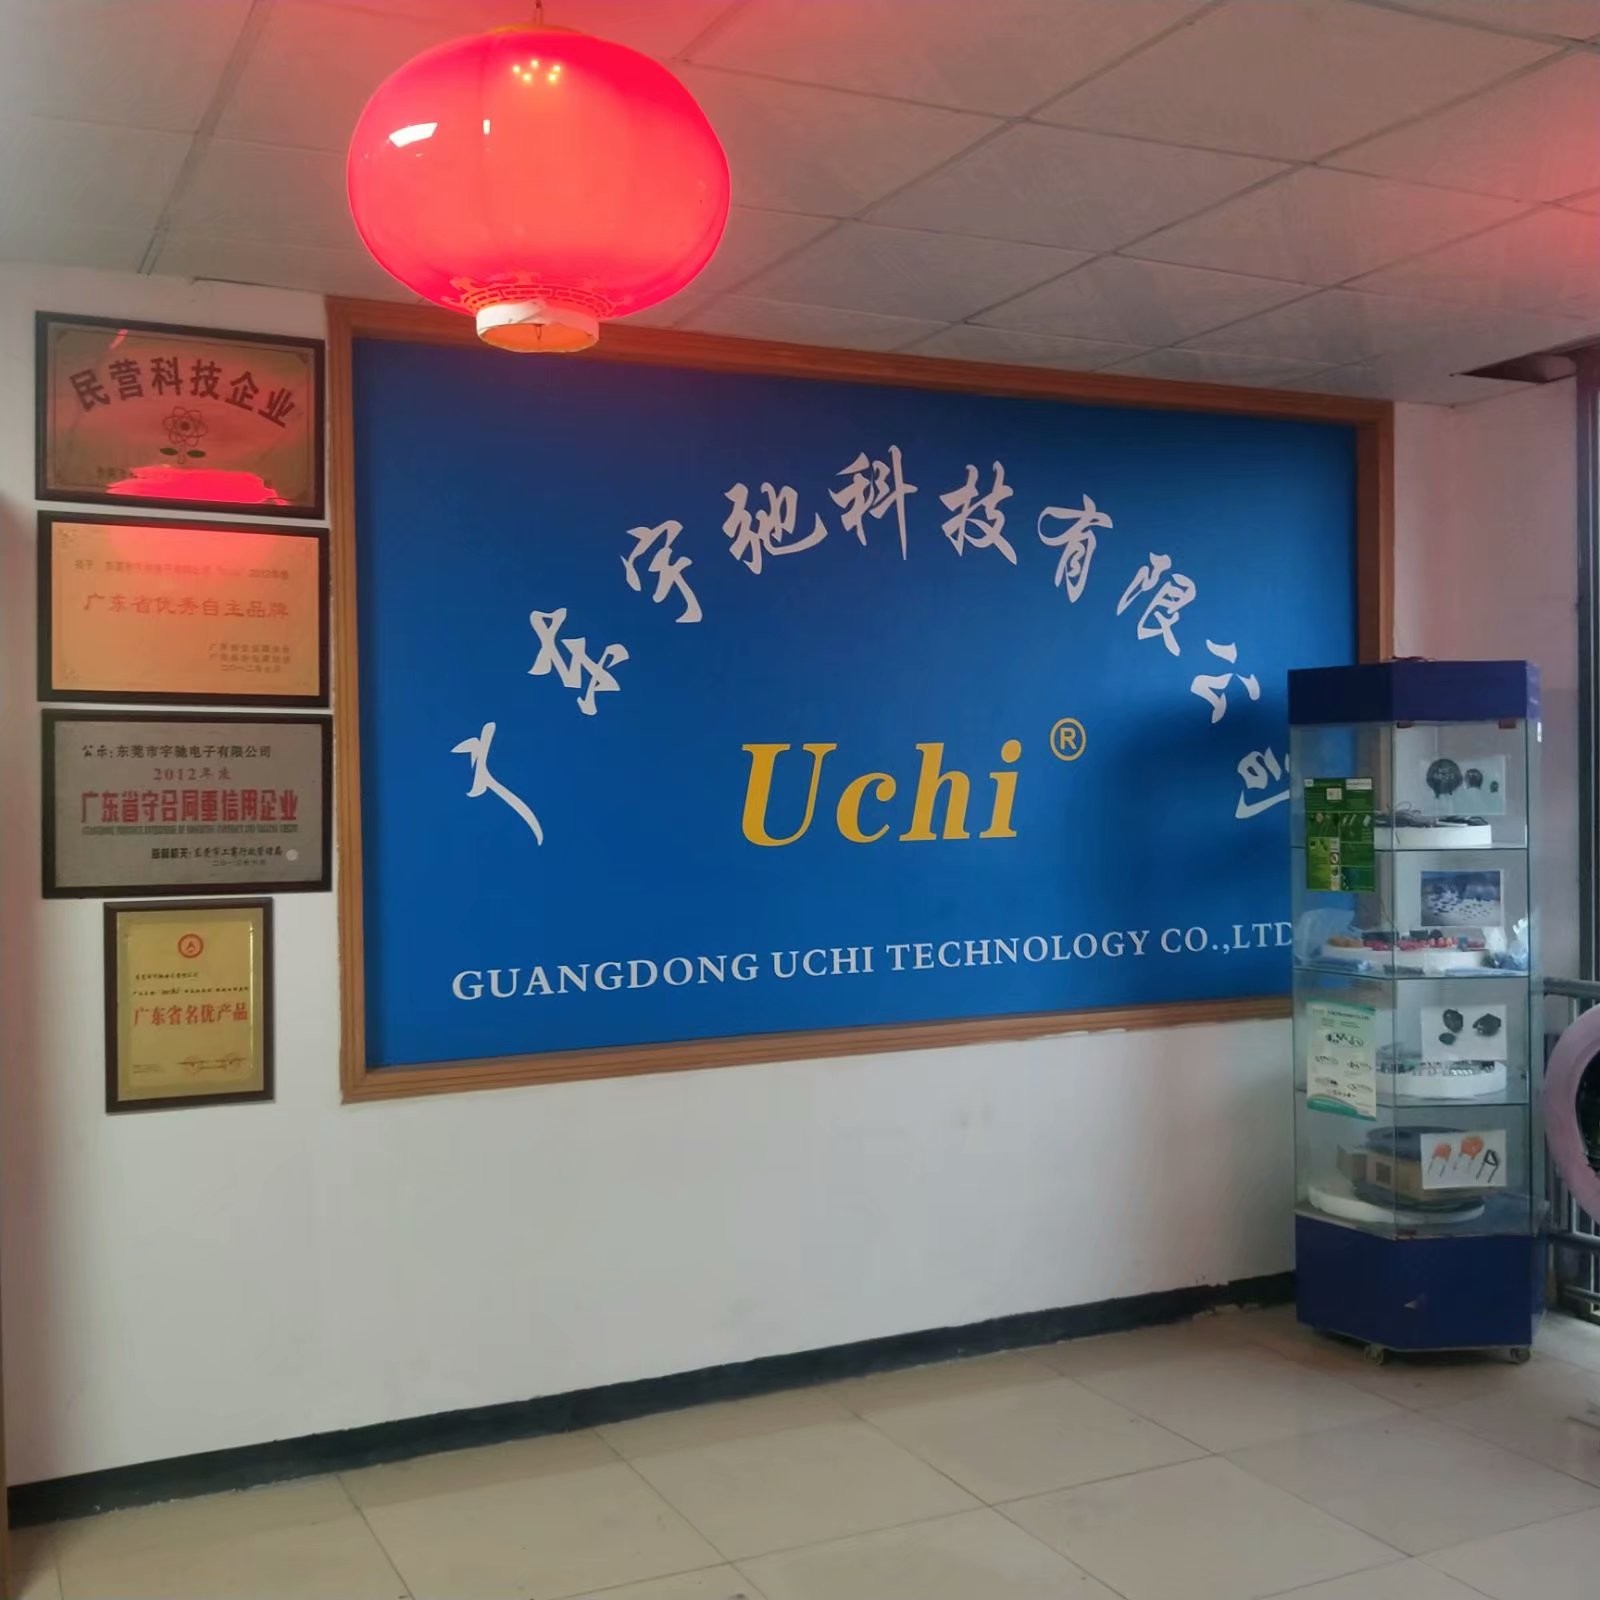 চীন Guangdong Uchi Technology Co.,Ltd সংস্থা প্রোফাইল